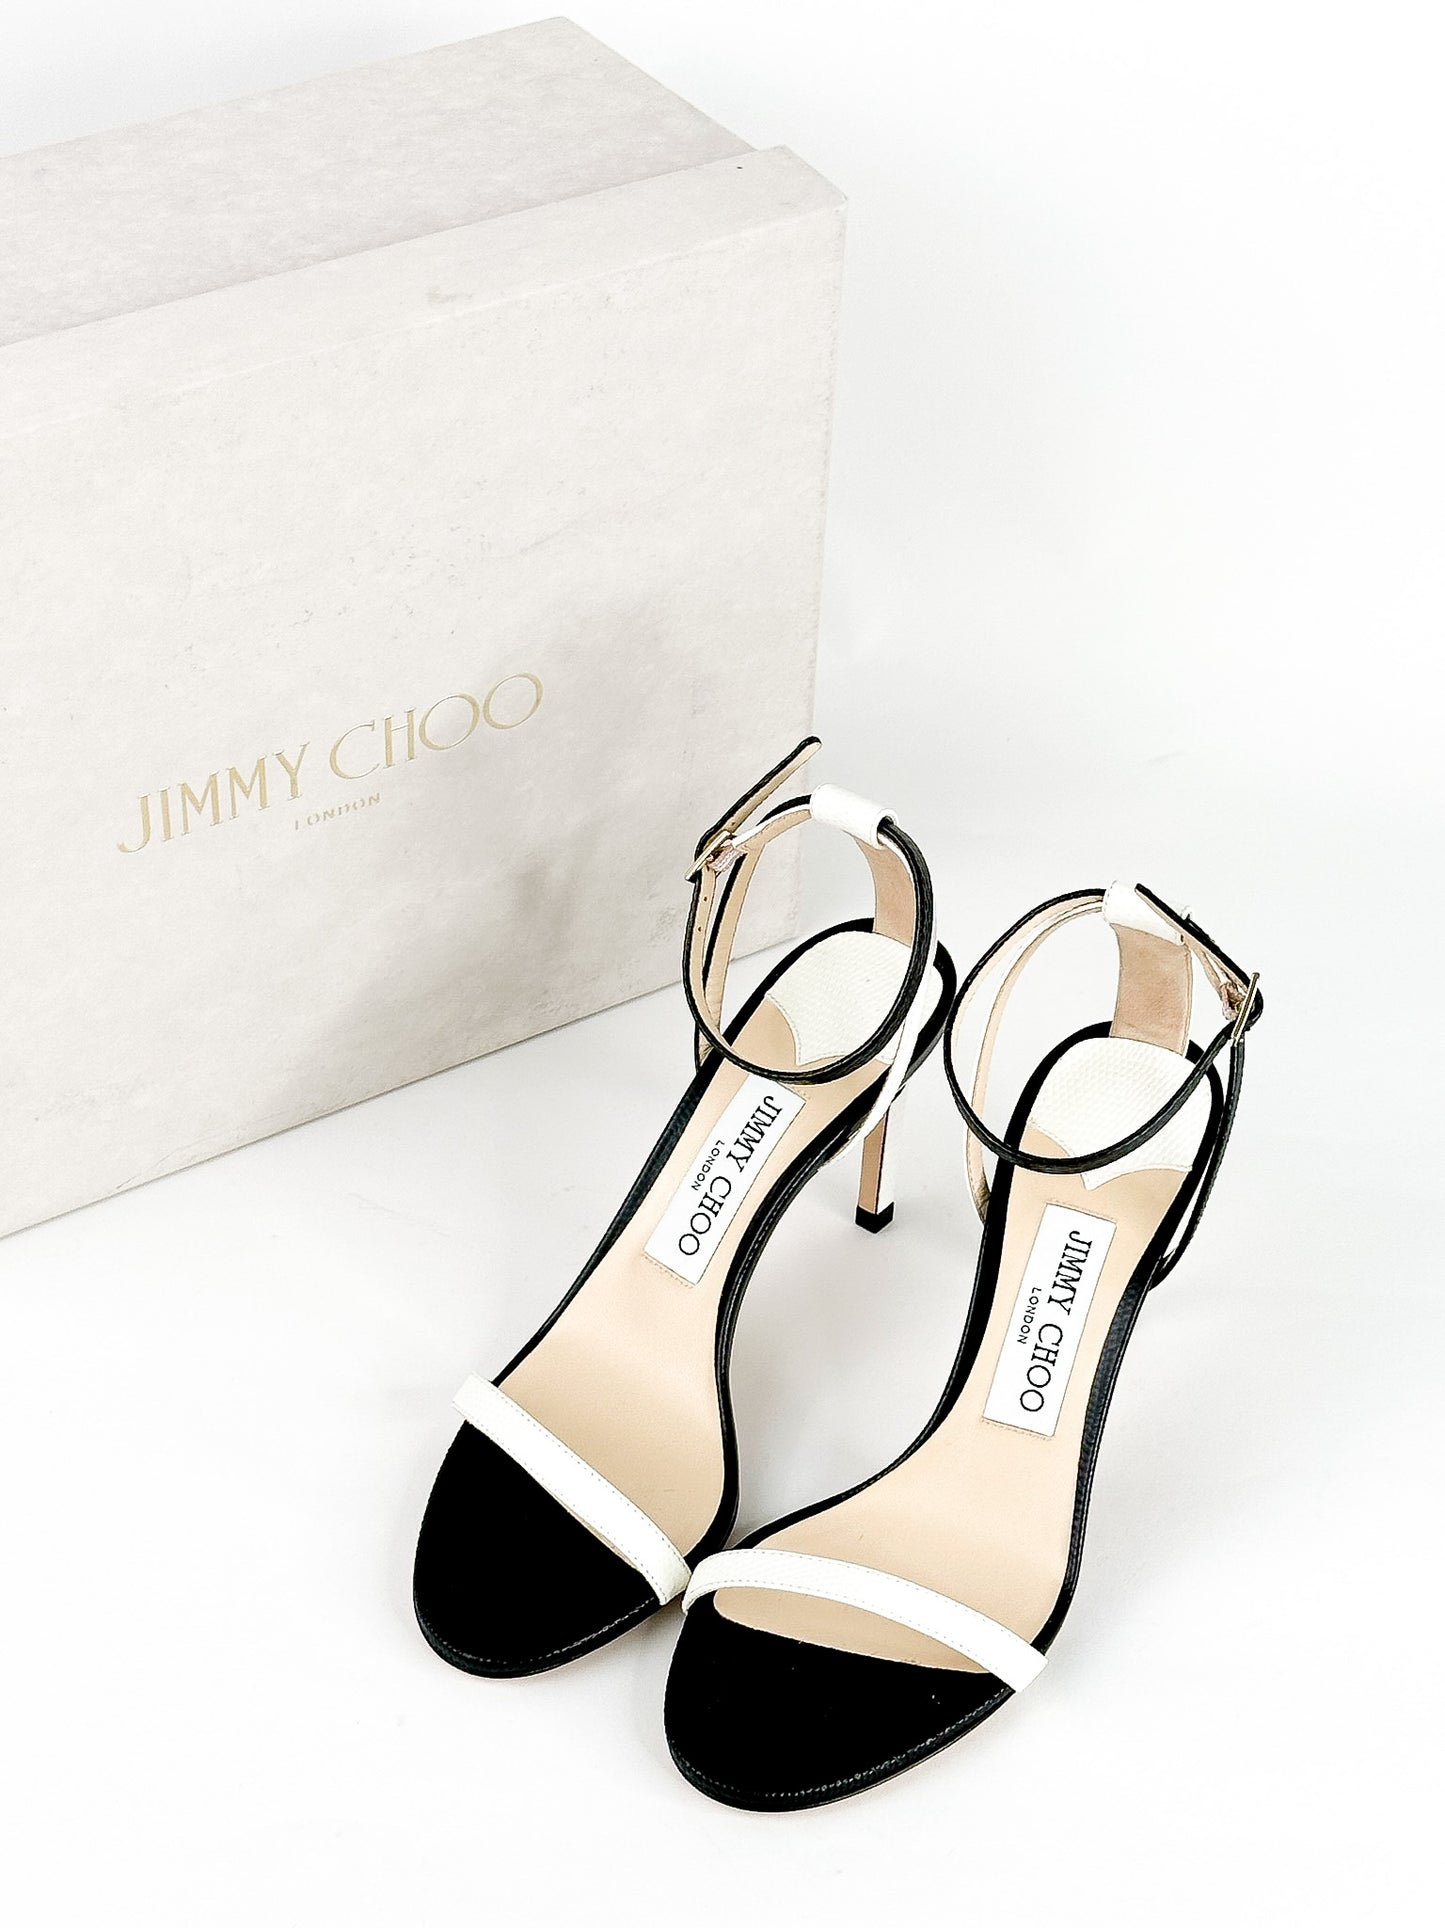 Jimmy Choo Minny Stiletto Sandals Size 36 1/2